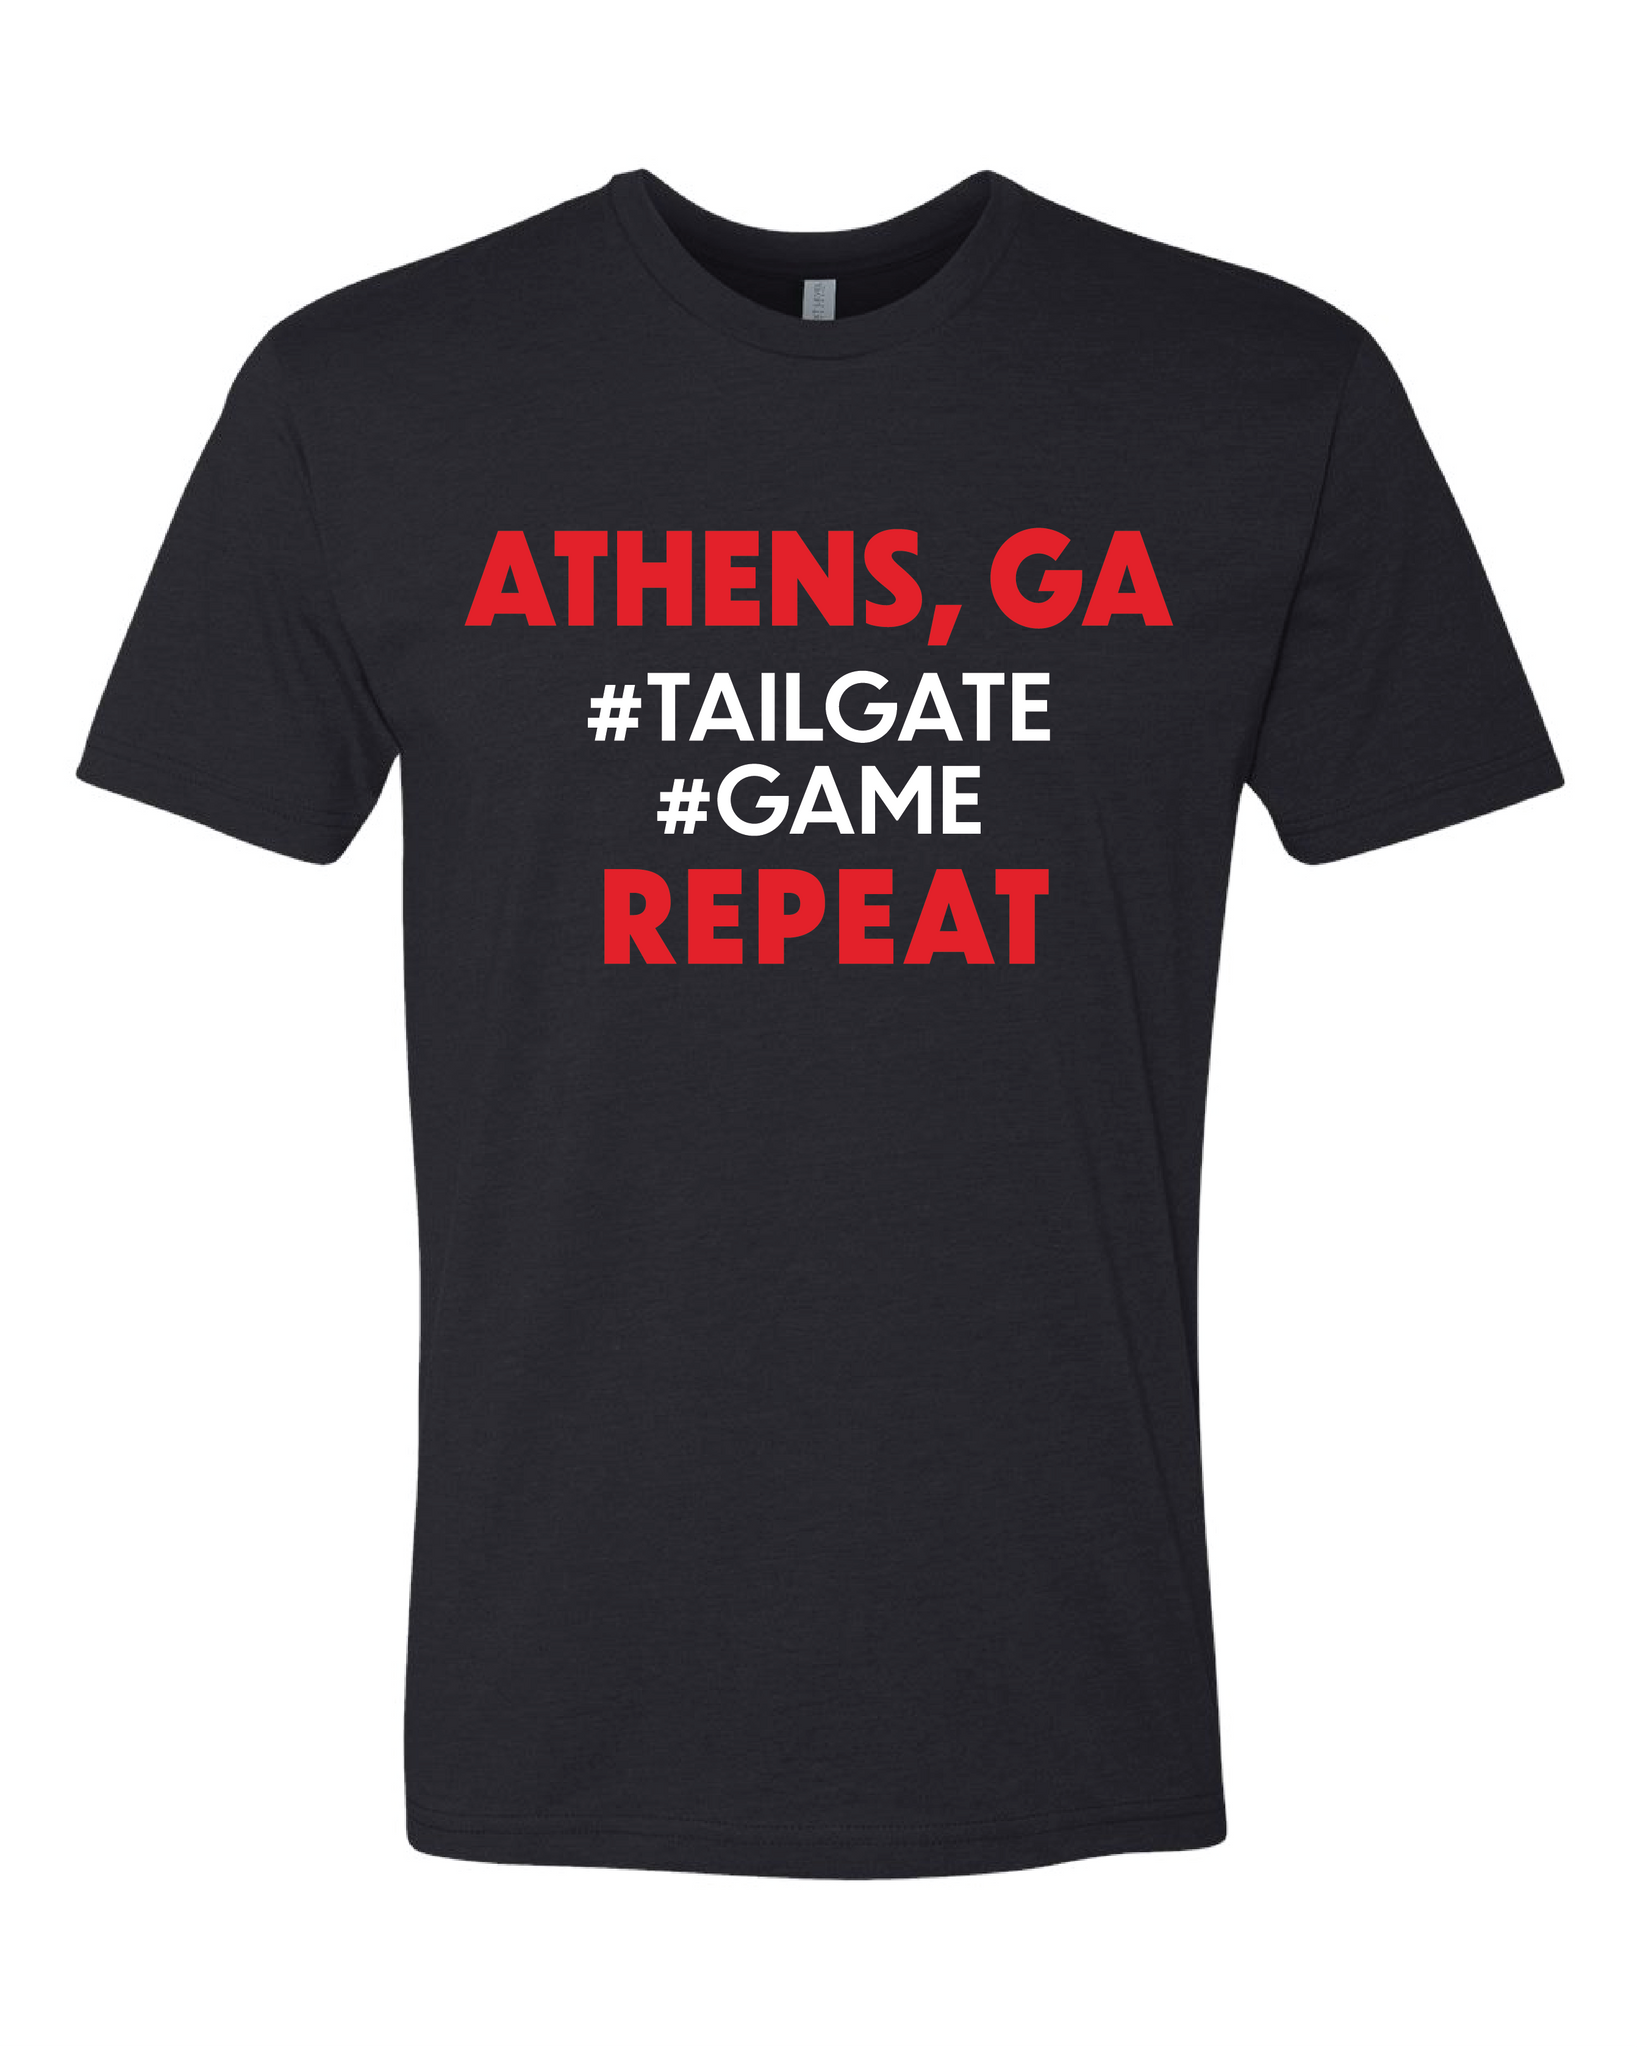 Tailgate. Game. Repeat. | GA